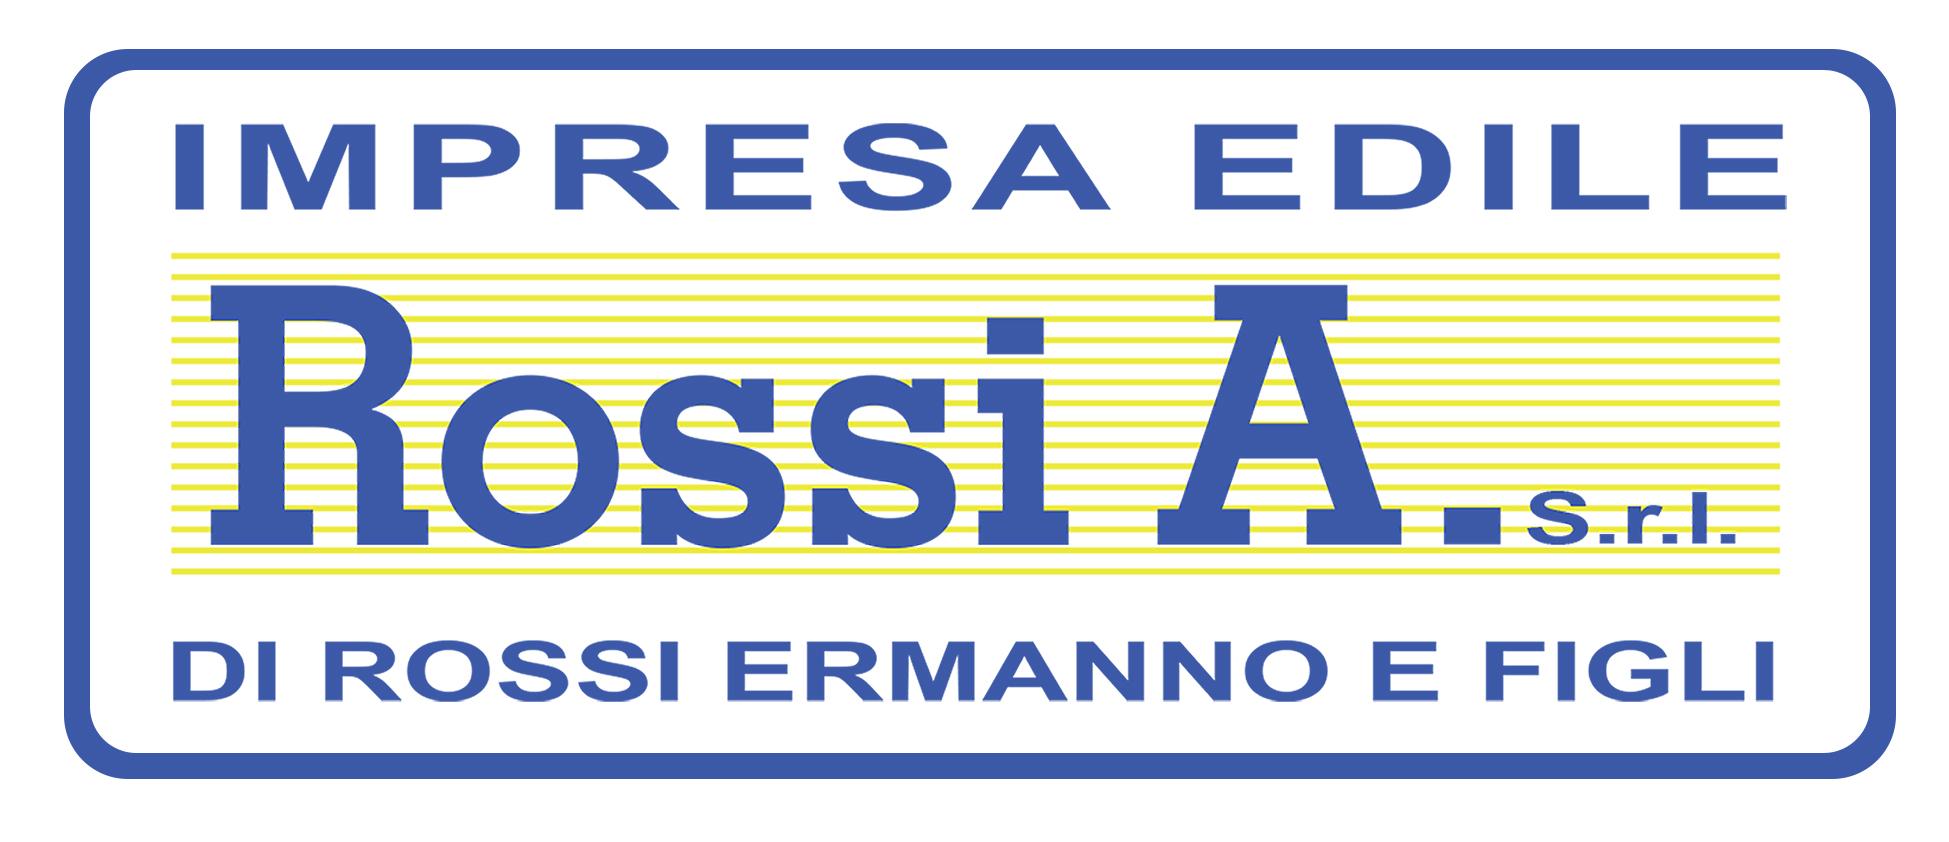 Impresa Edile ROSSI A. S.r.l.